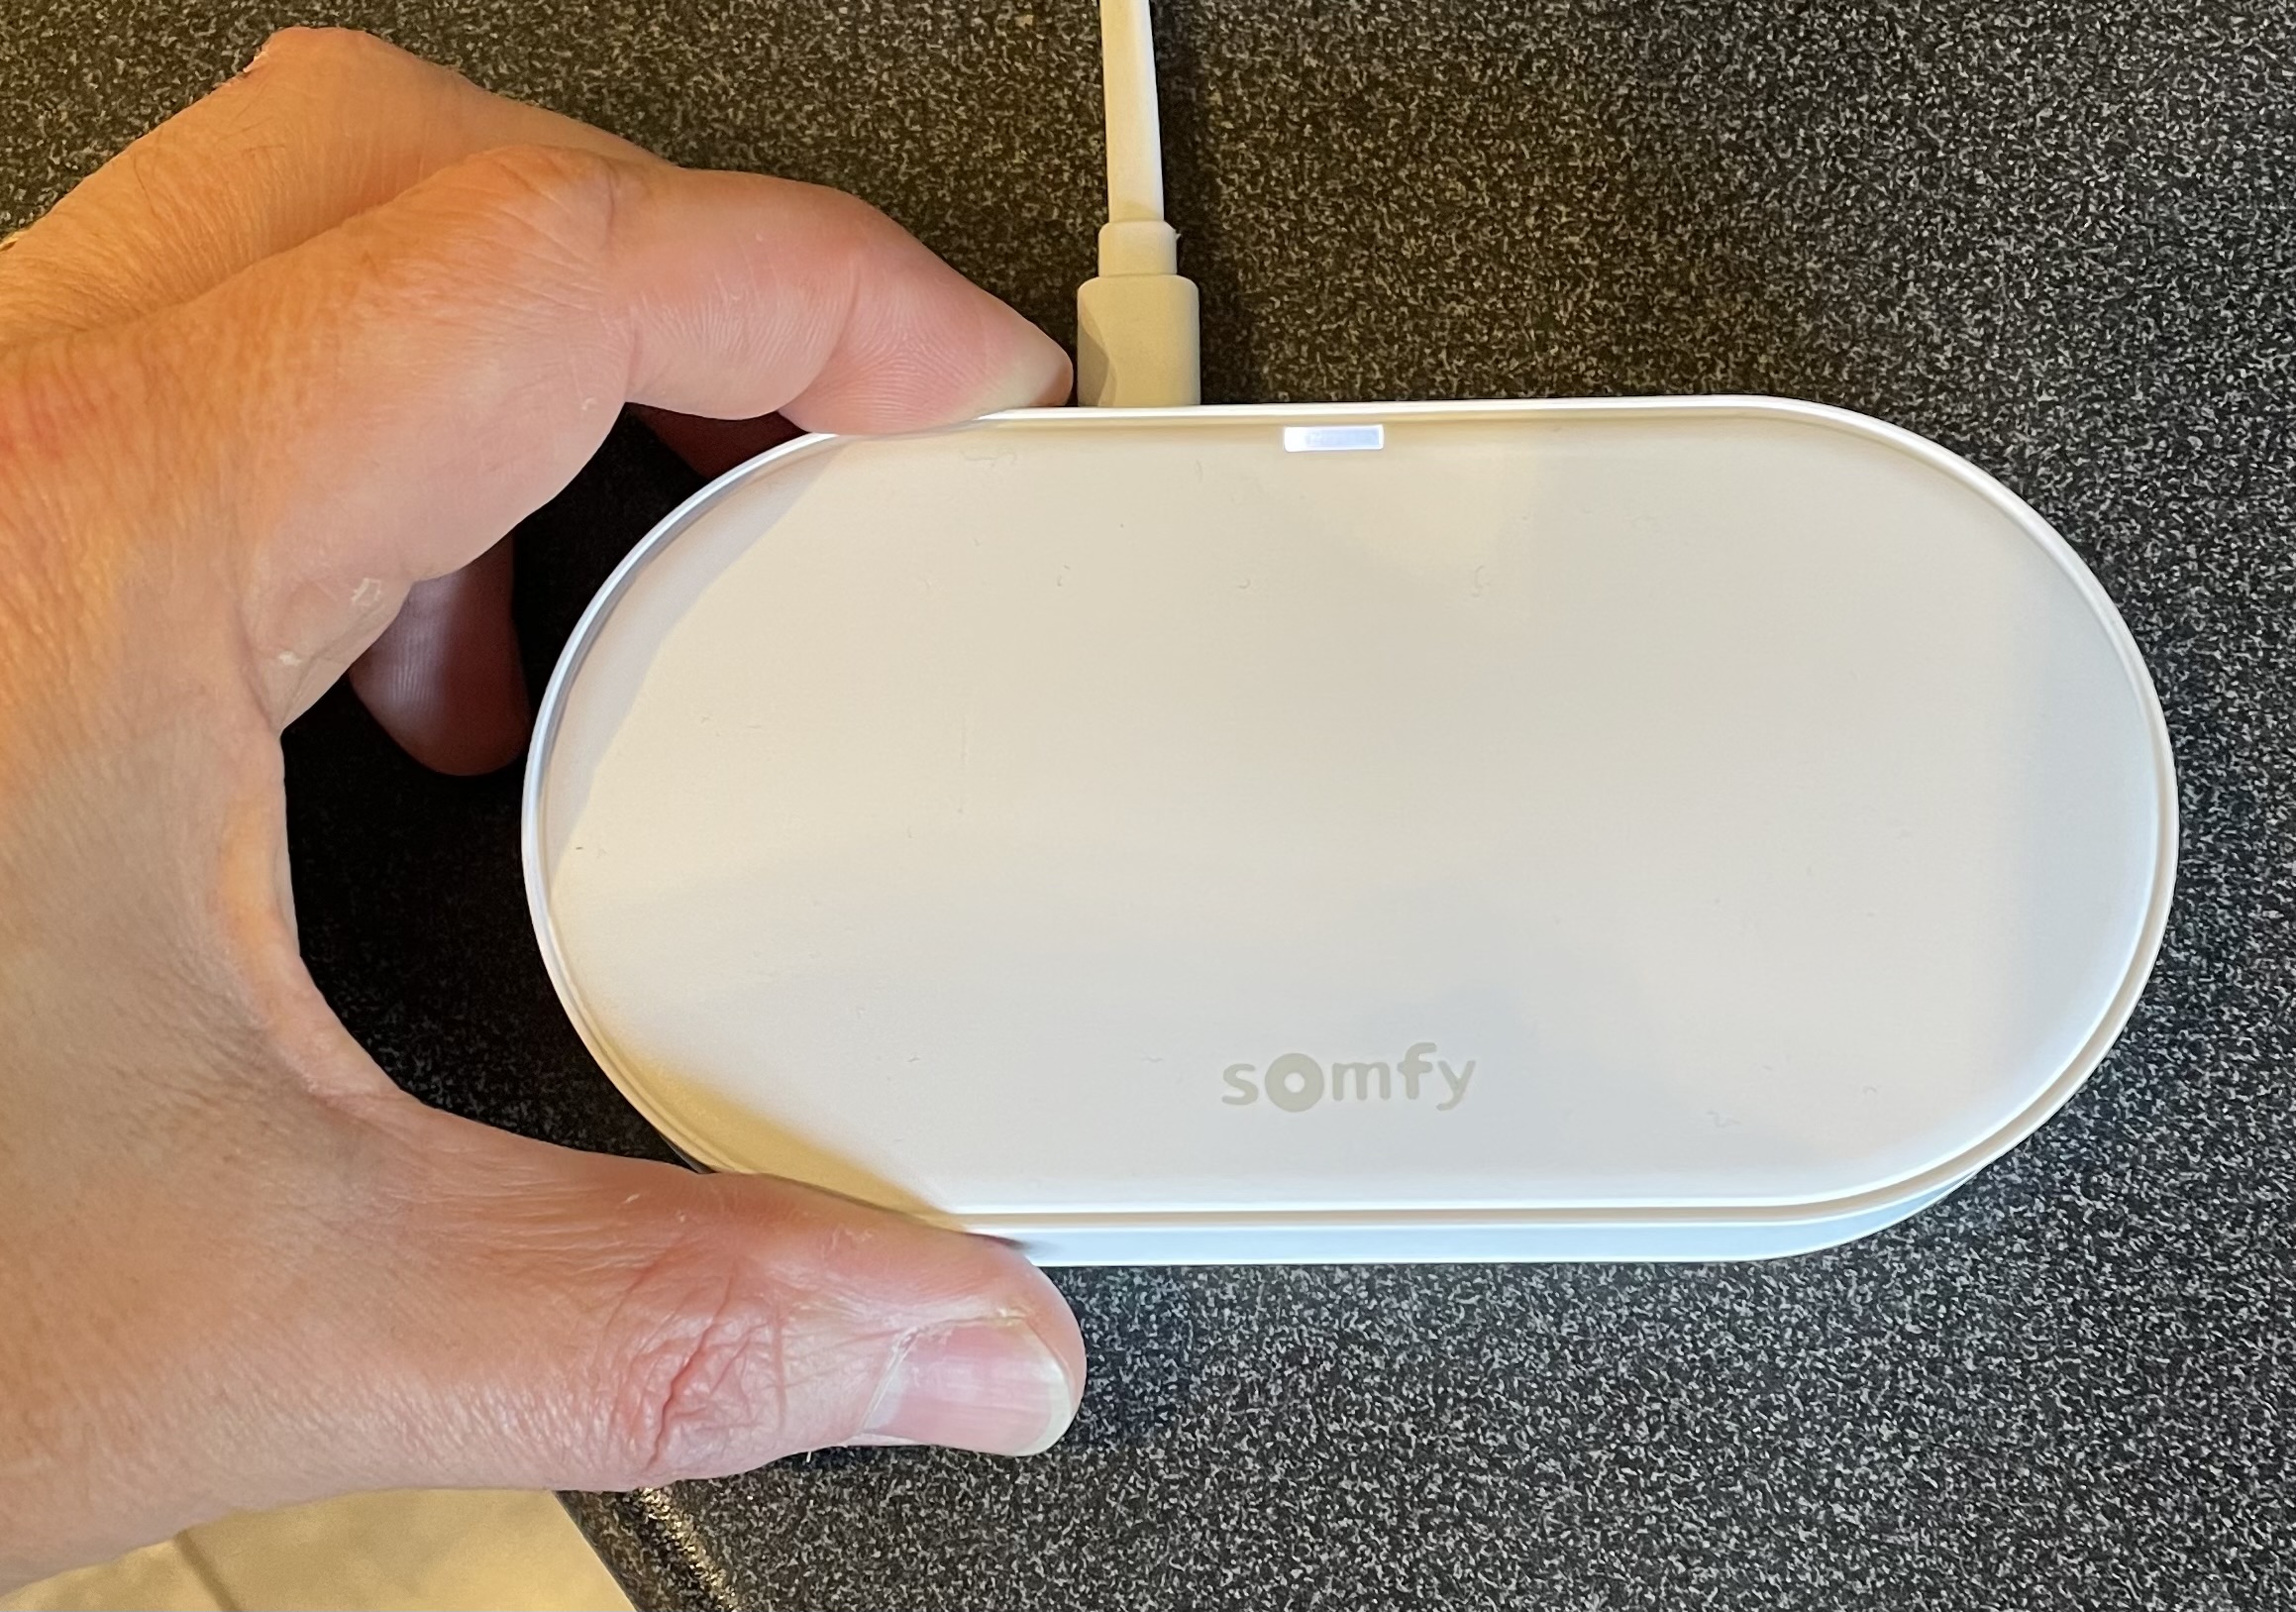 Kit Connectivité Somfy